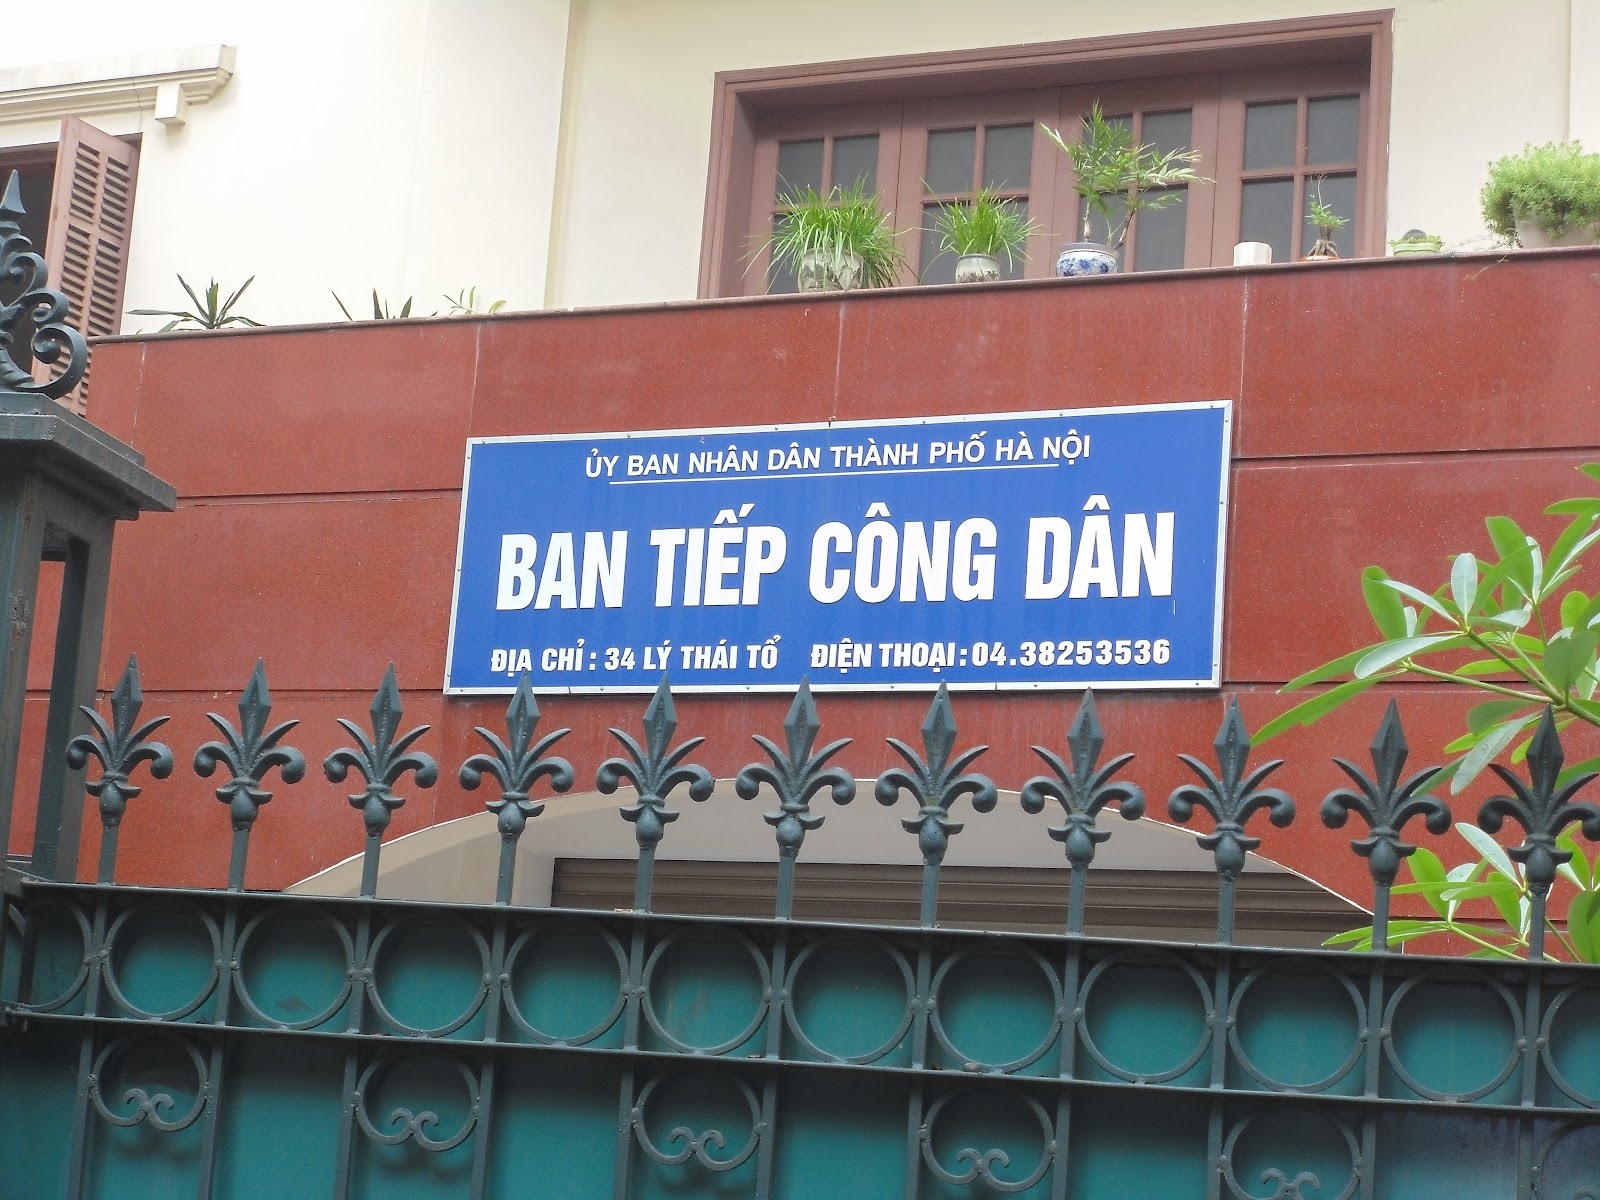 Hà Nội dừng hoạt động trụ sở tiếp công dân tại quận Hà Đông để sửa chữa-2